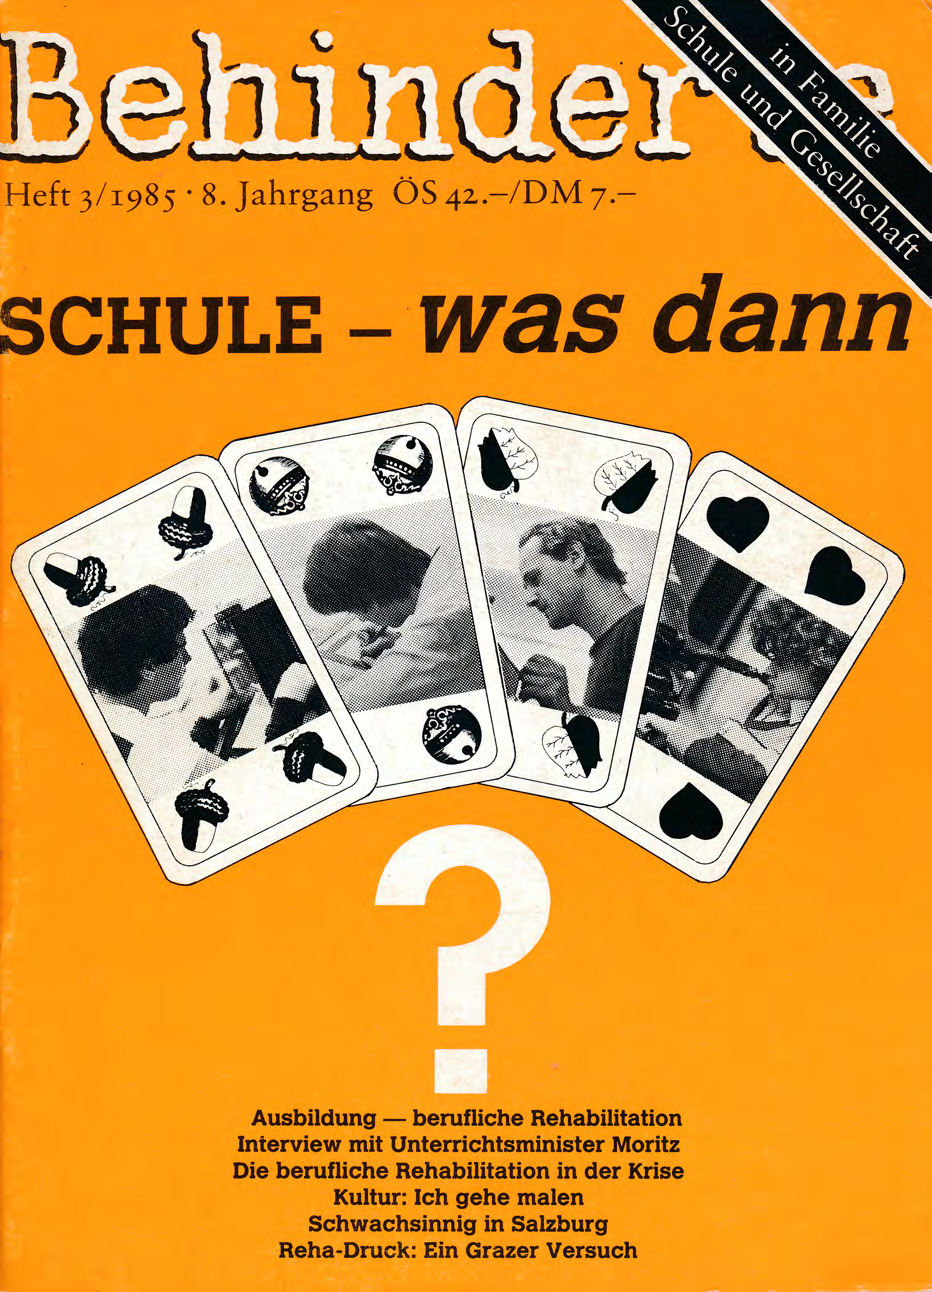 Titelbild der Zeitschrift BEHINDERTE MENSCHEN, Ausgabe 3/1985 "Schule – was ist das?"